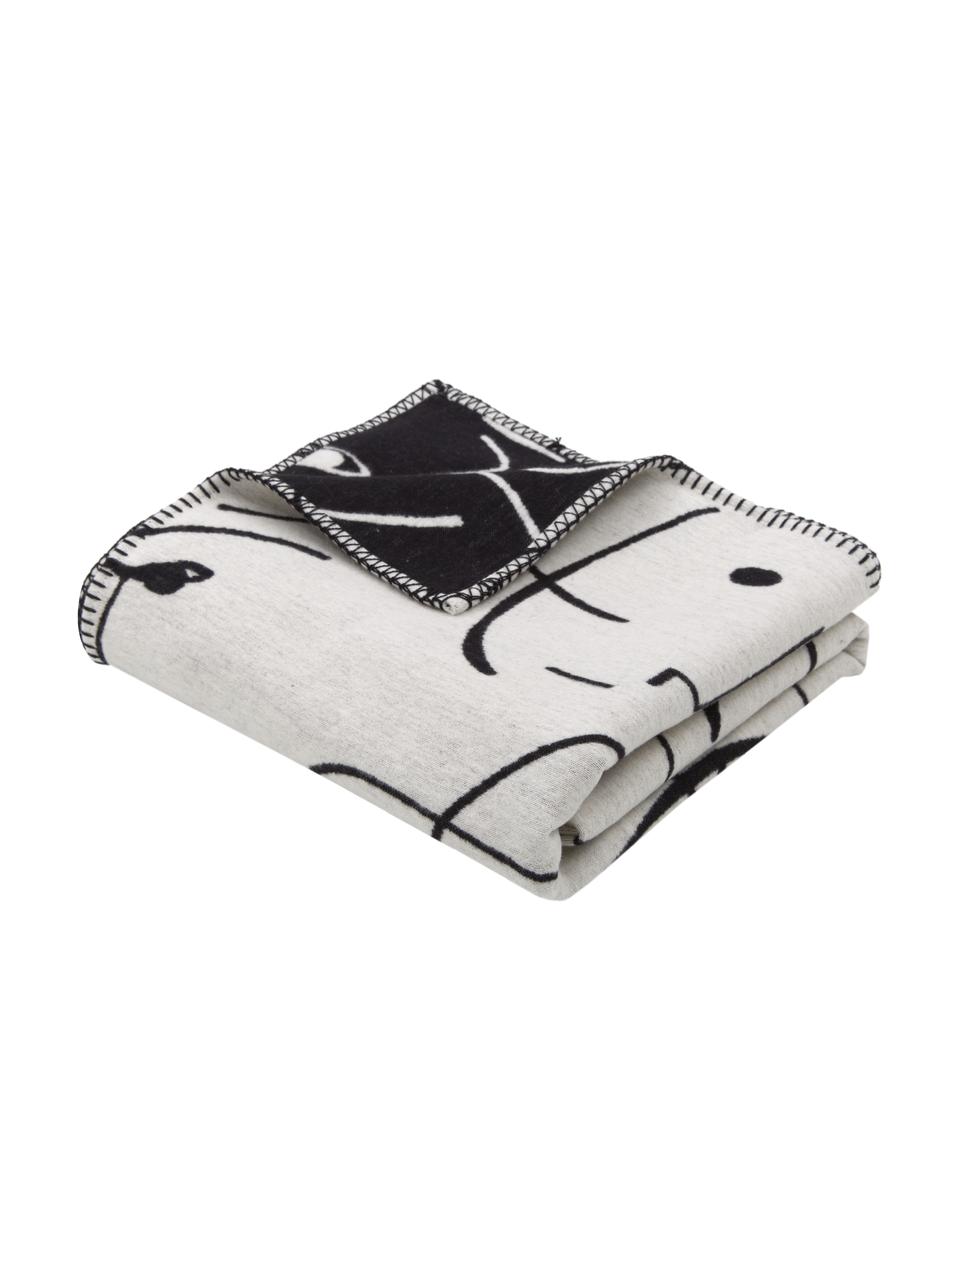 Plaid réversible en coton noir et blanc design One-Line Faces, 85 % coton, 15 % polyacrylique, Blanc, noir, larg. 140 x long. 200 cm